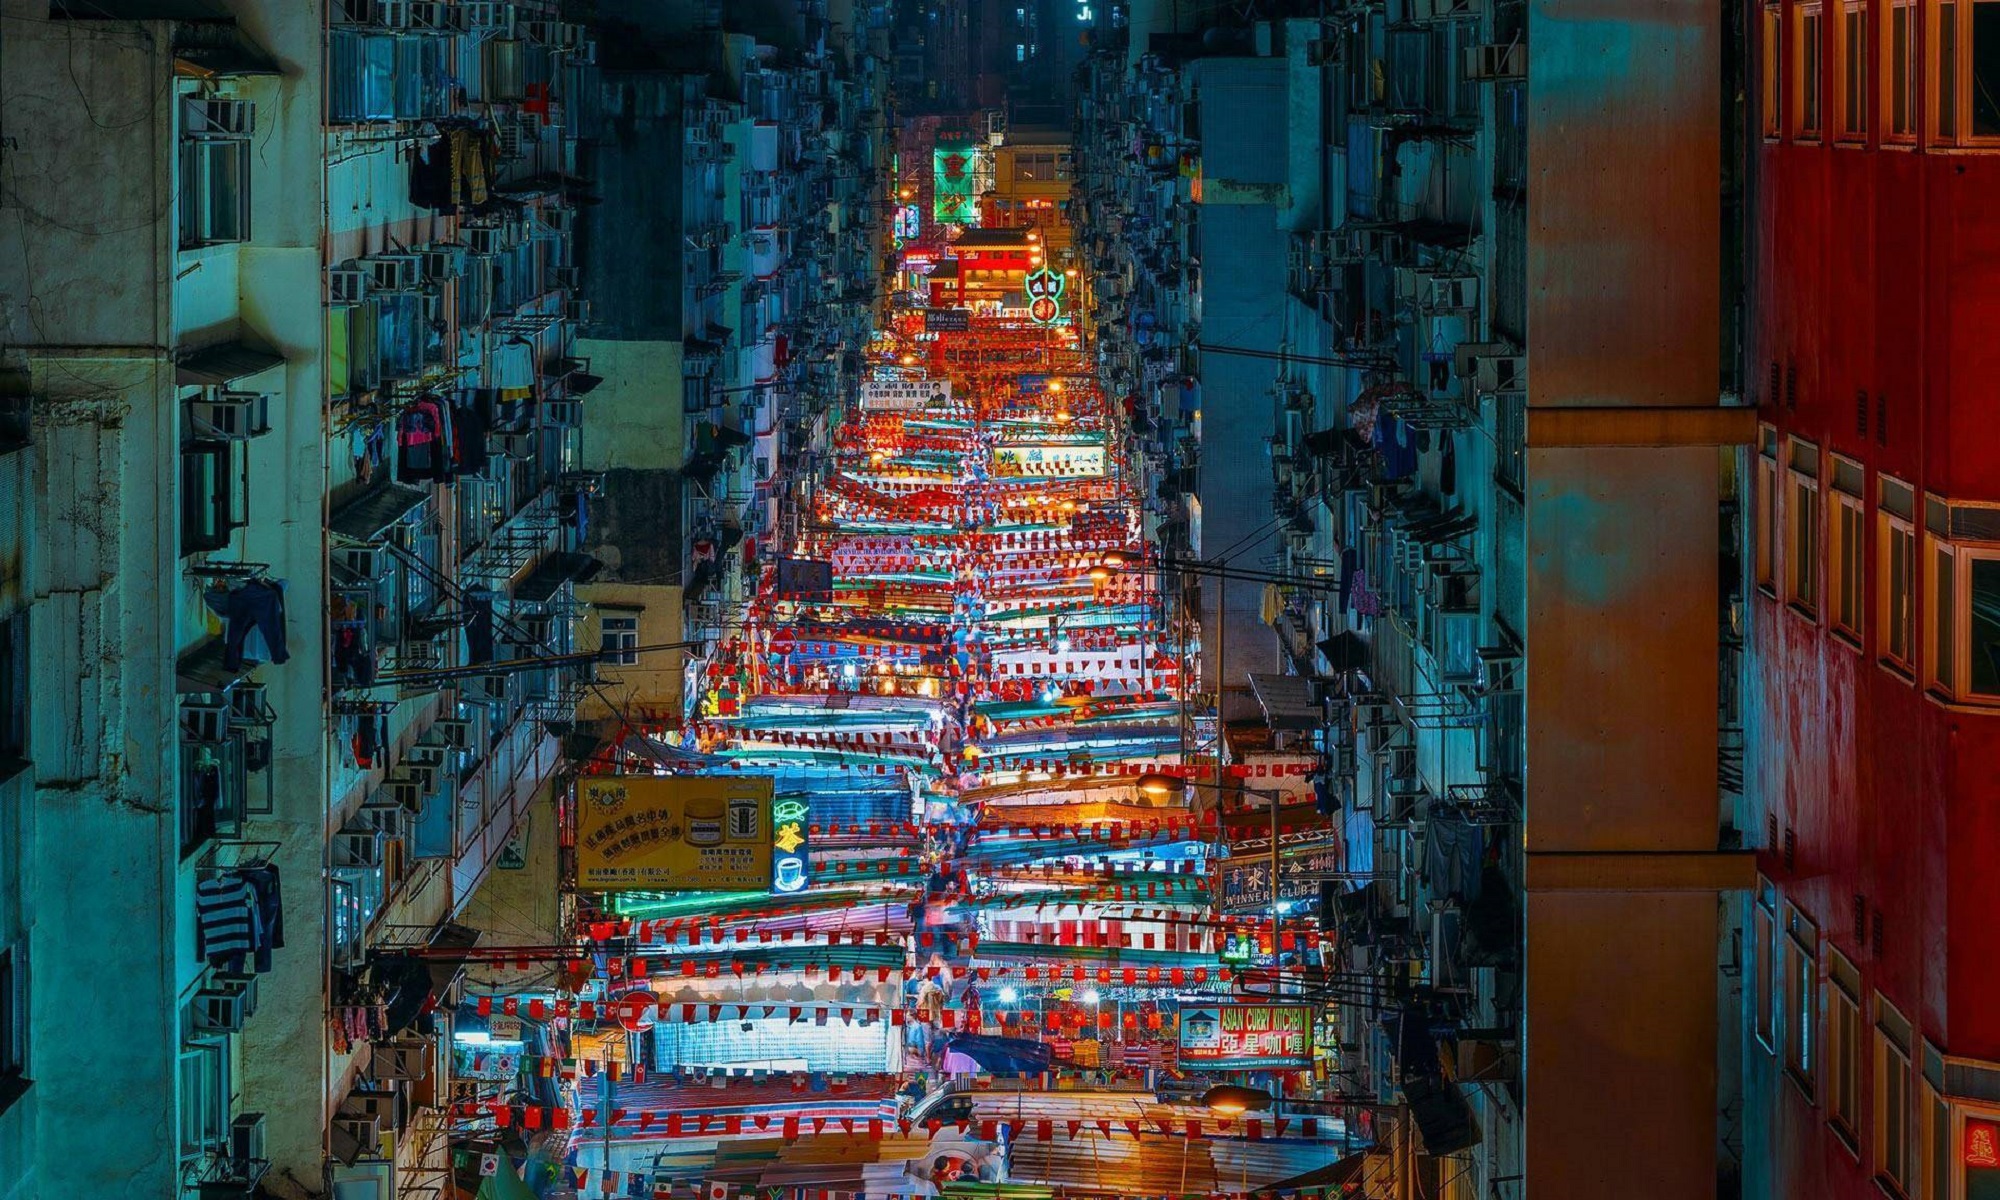 Hong Kong market street